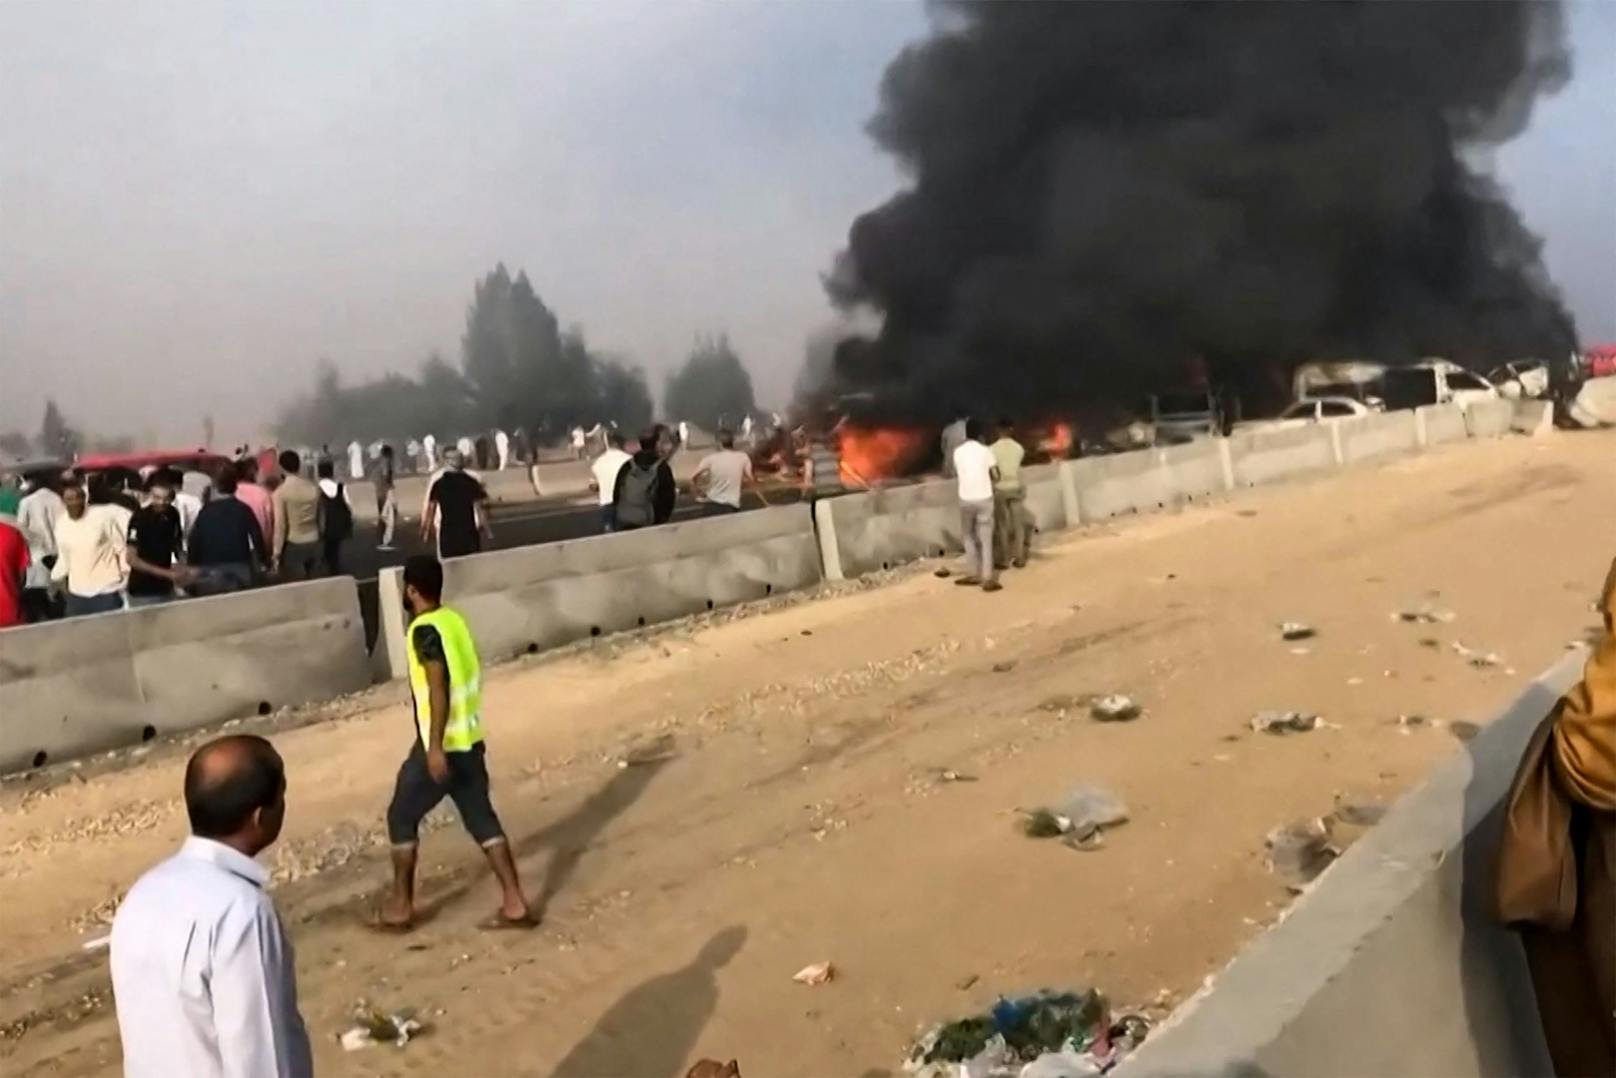 Das Unglück ereignete sich 160 Kilometer nördlich von Kairo auf einer Wüstenstraße. 